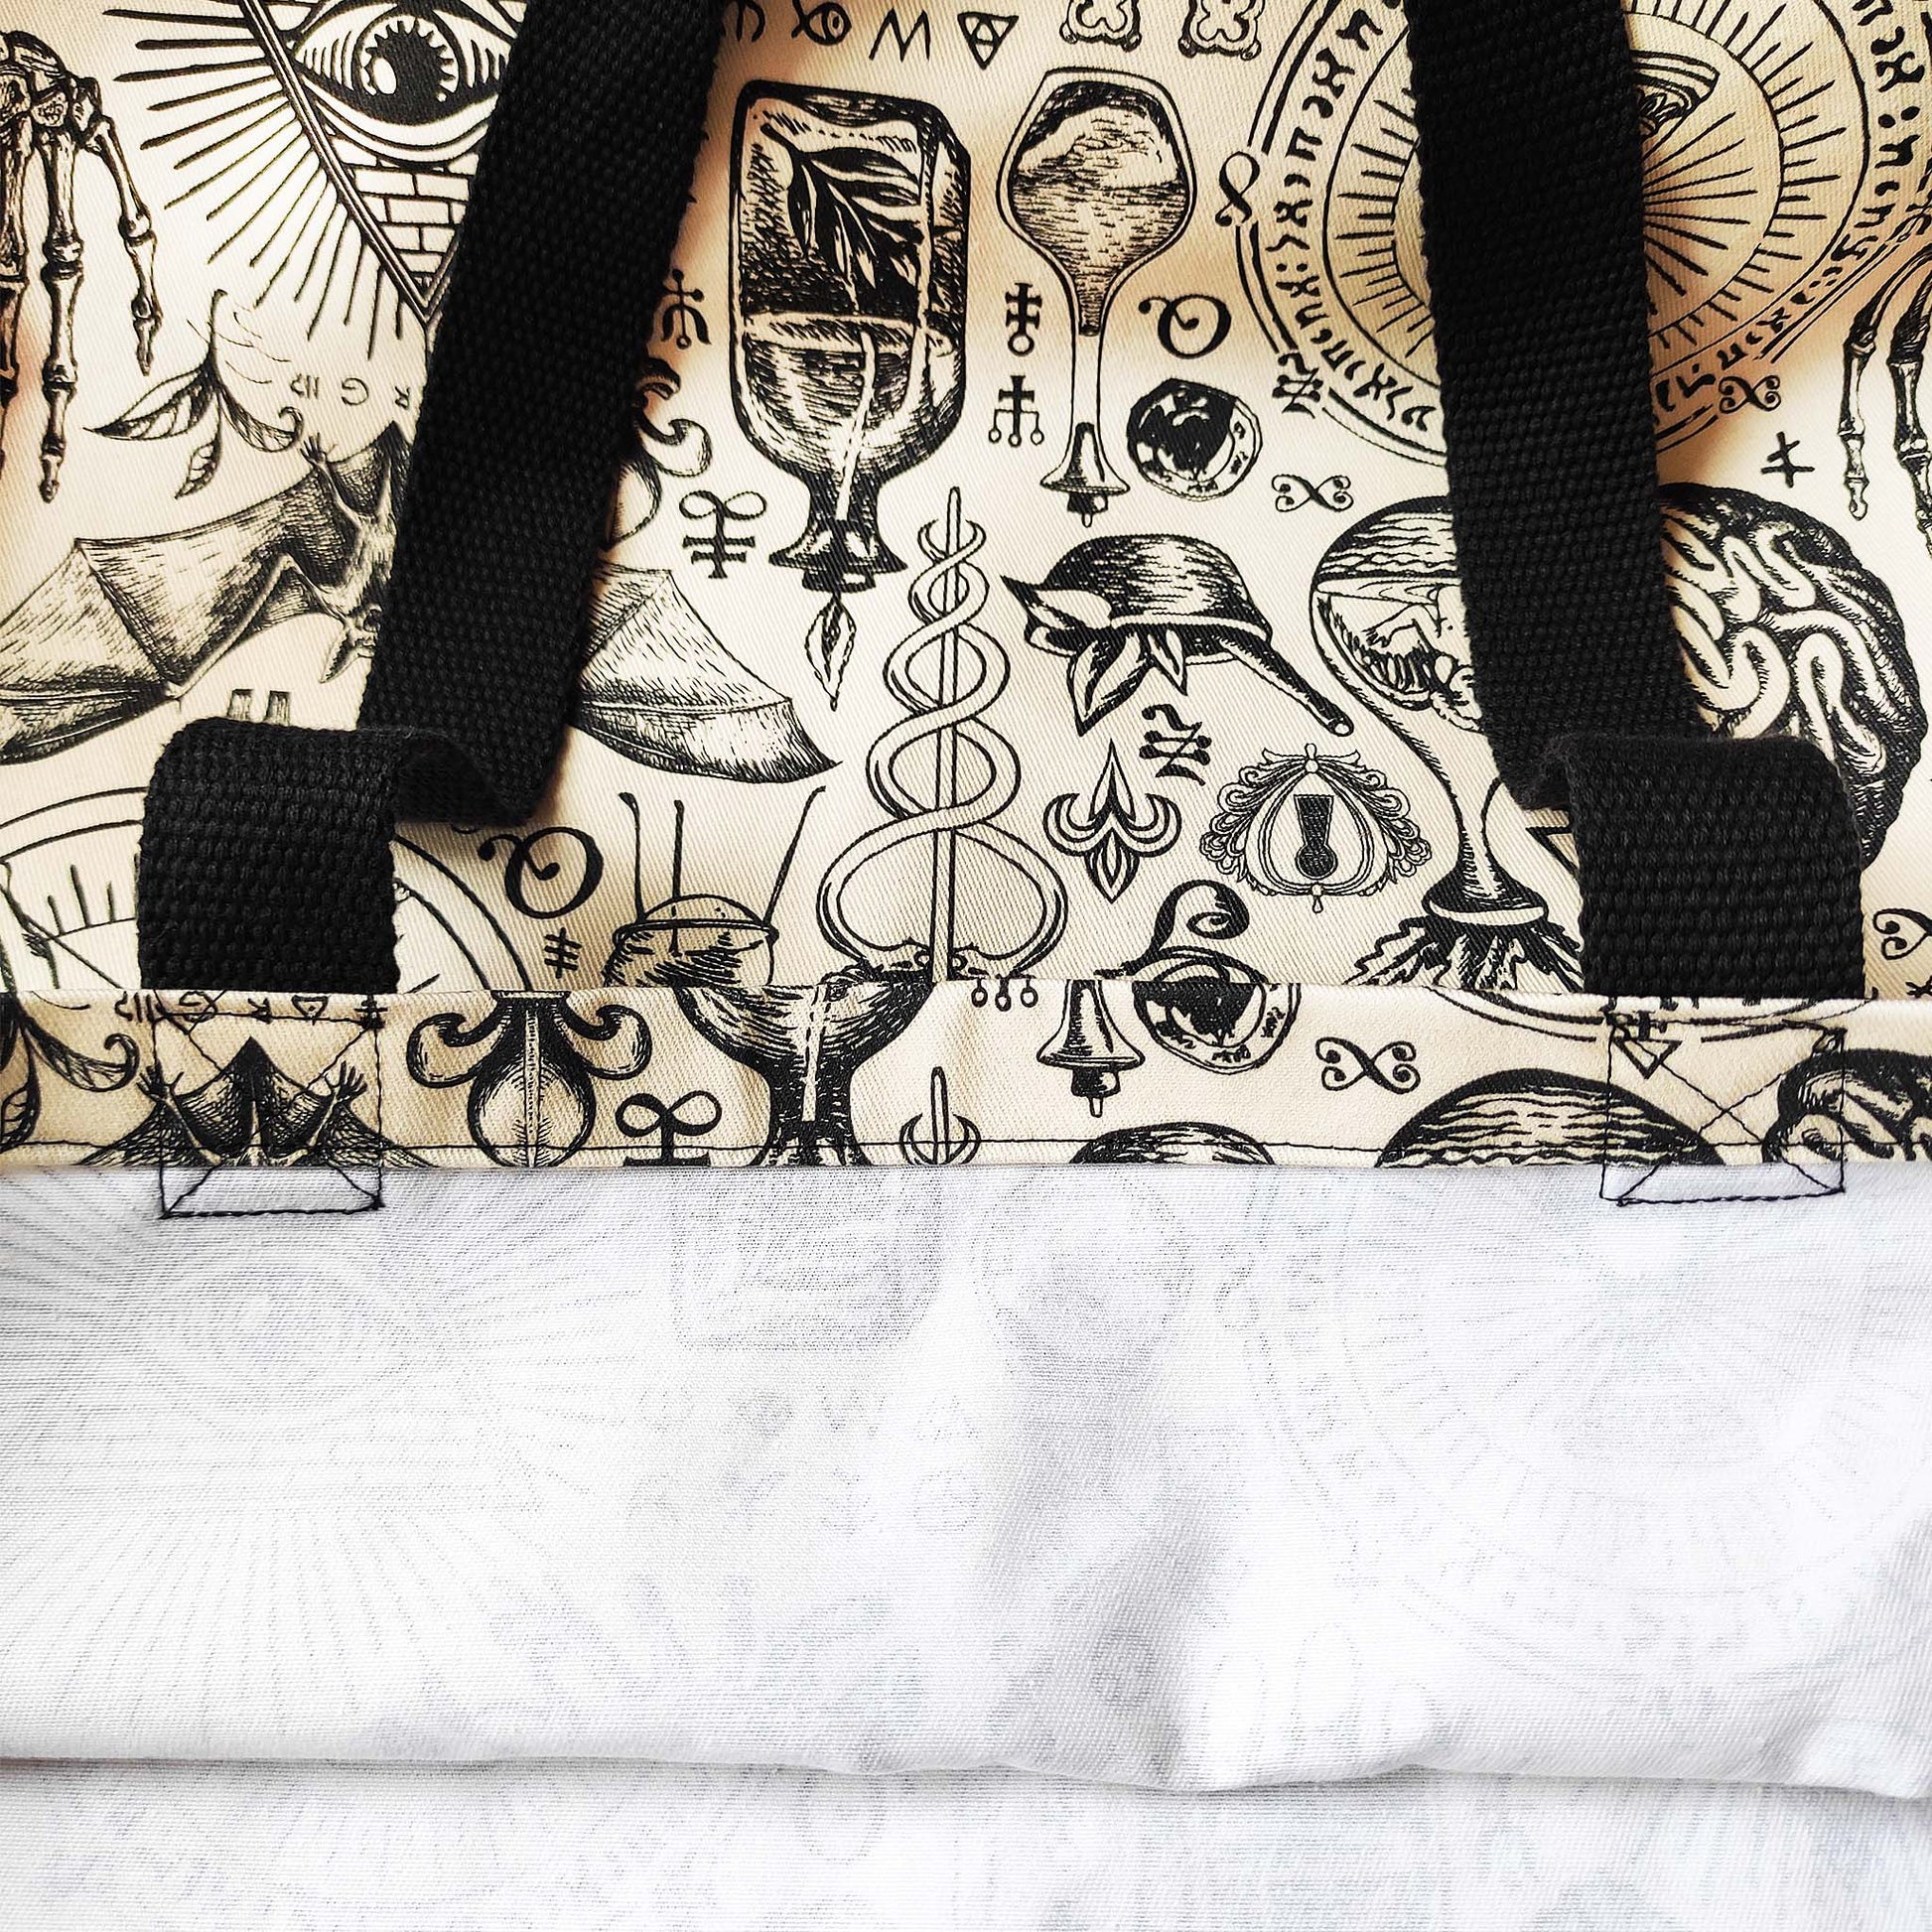 Diese außergewöhnliche Shopper Tasche im Vintage-Stil mit Hexen- und okkultem Muster ist eine wahre Rarität.